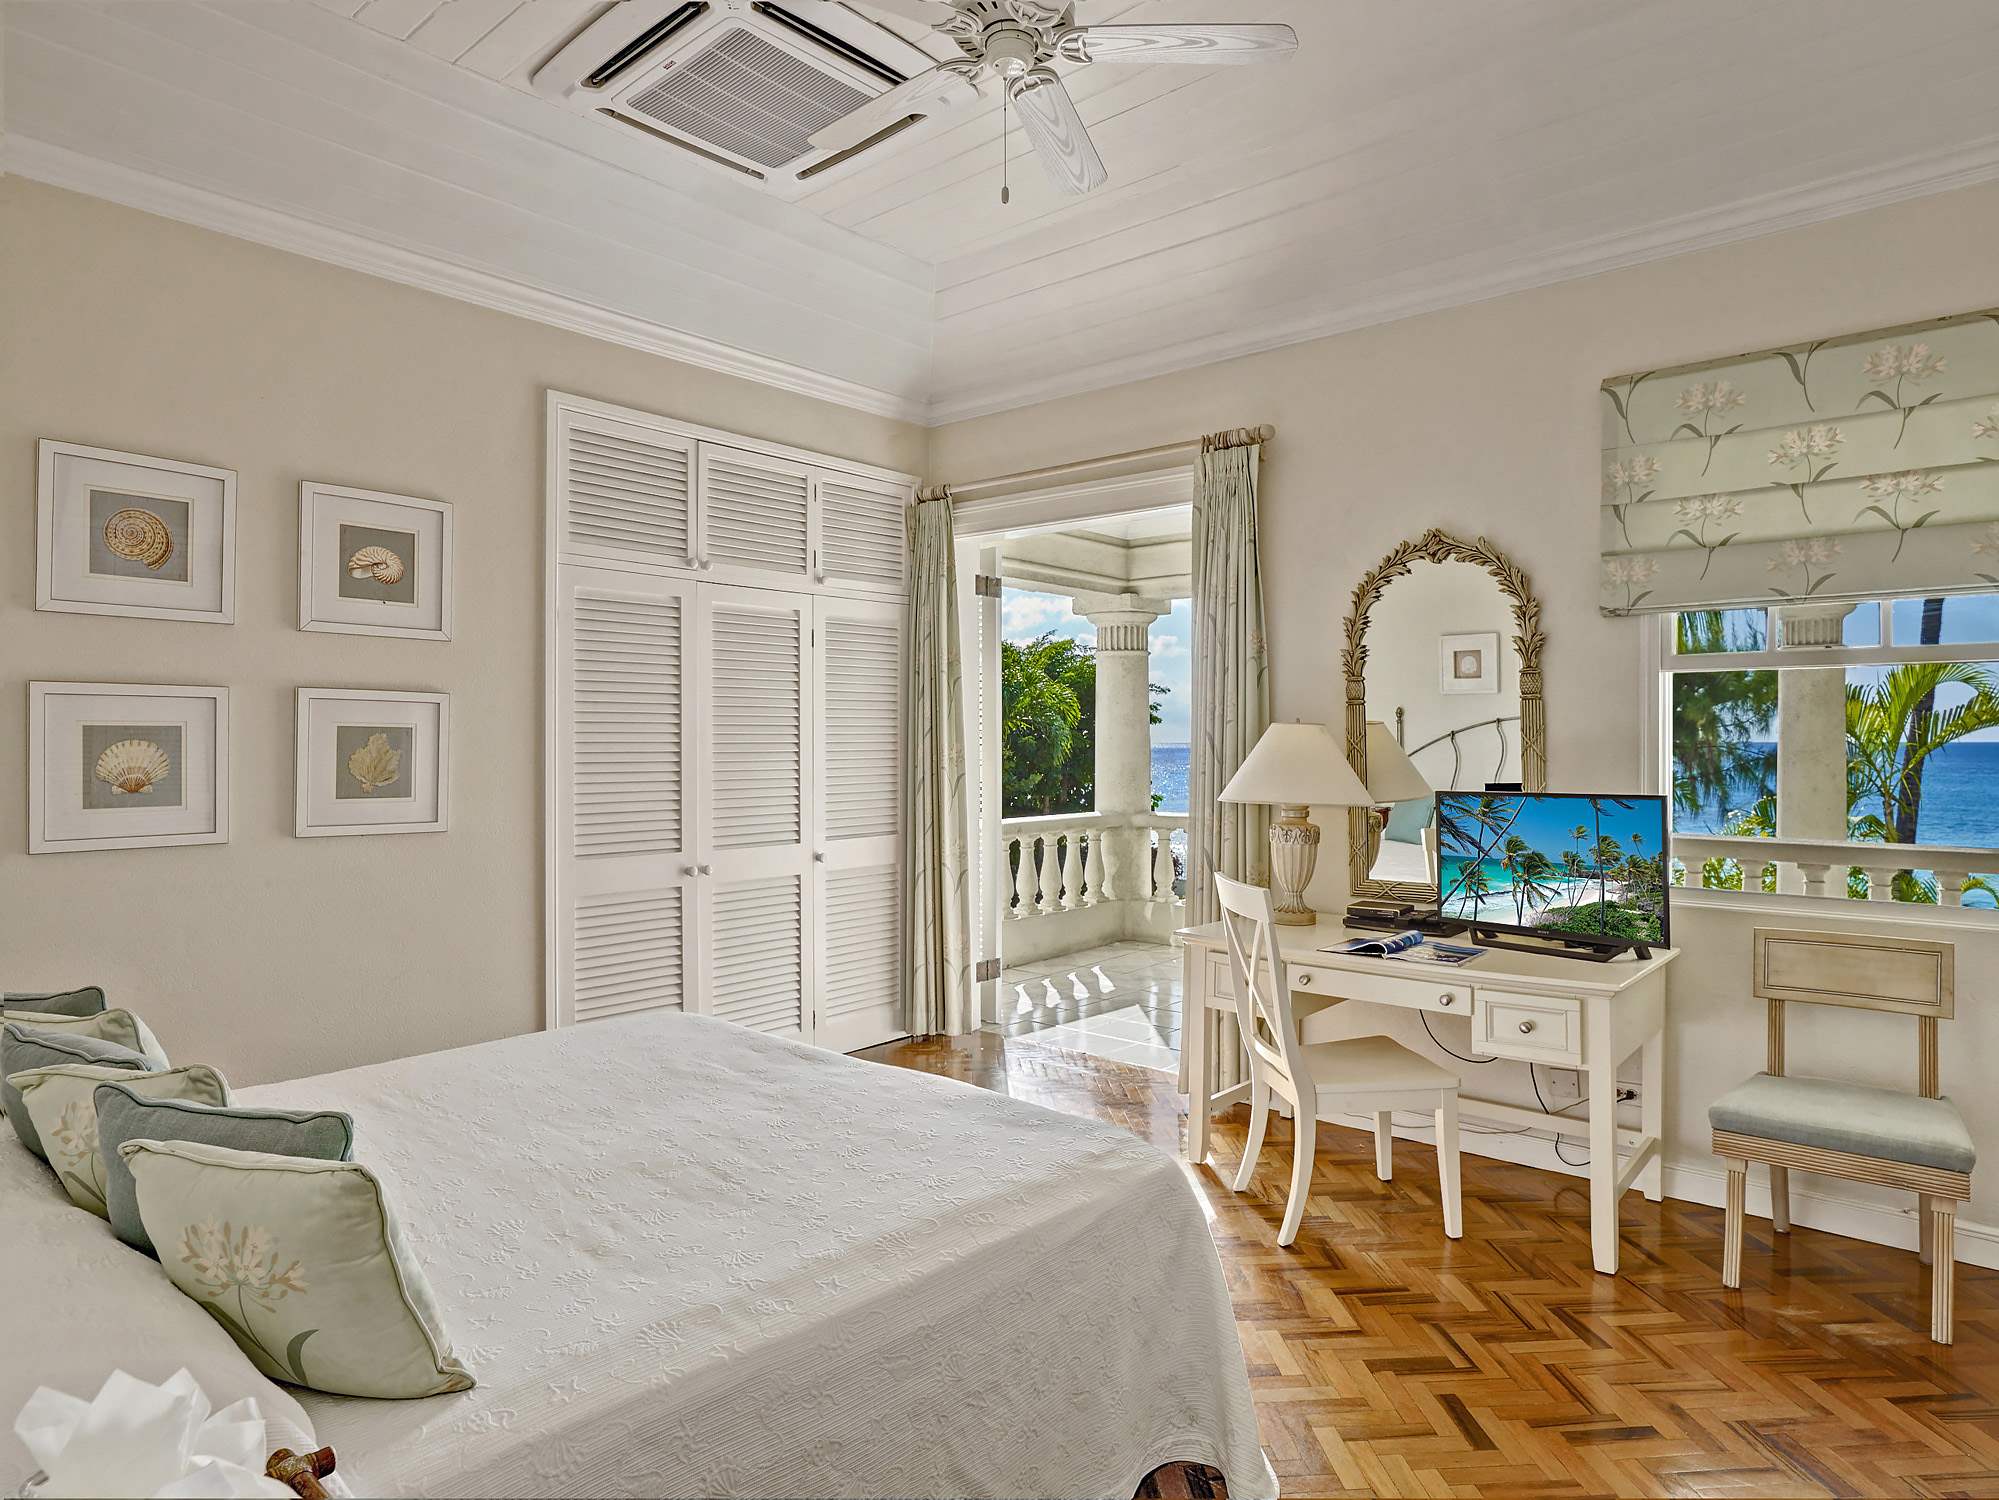 New Mansion, 4 bedroom villa in St. James & West Coast, Barbados Photo #14